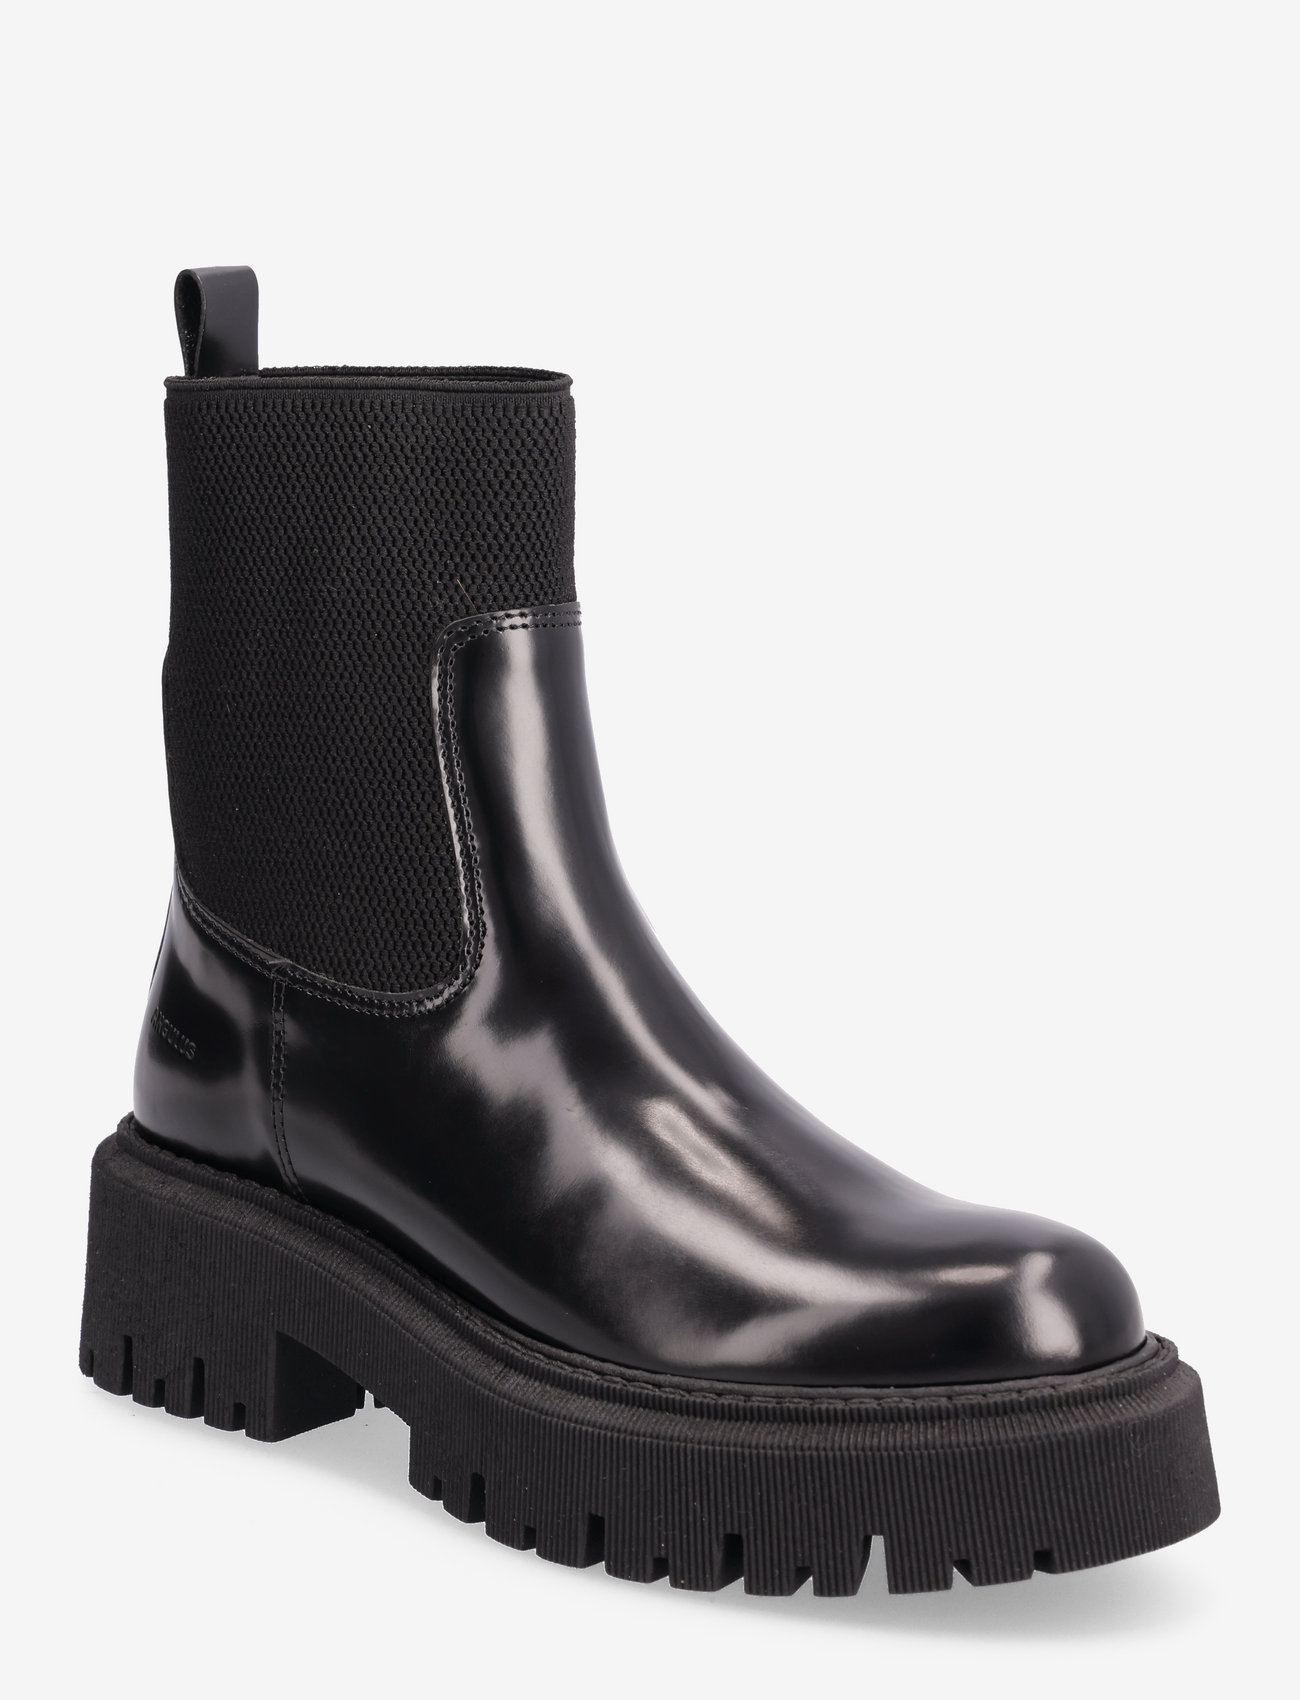 ANGULUS - Boots - flat - tasapohjaiset nilkkurit - 1425/053 black/black - 0